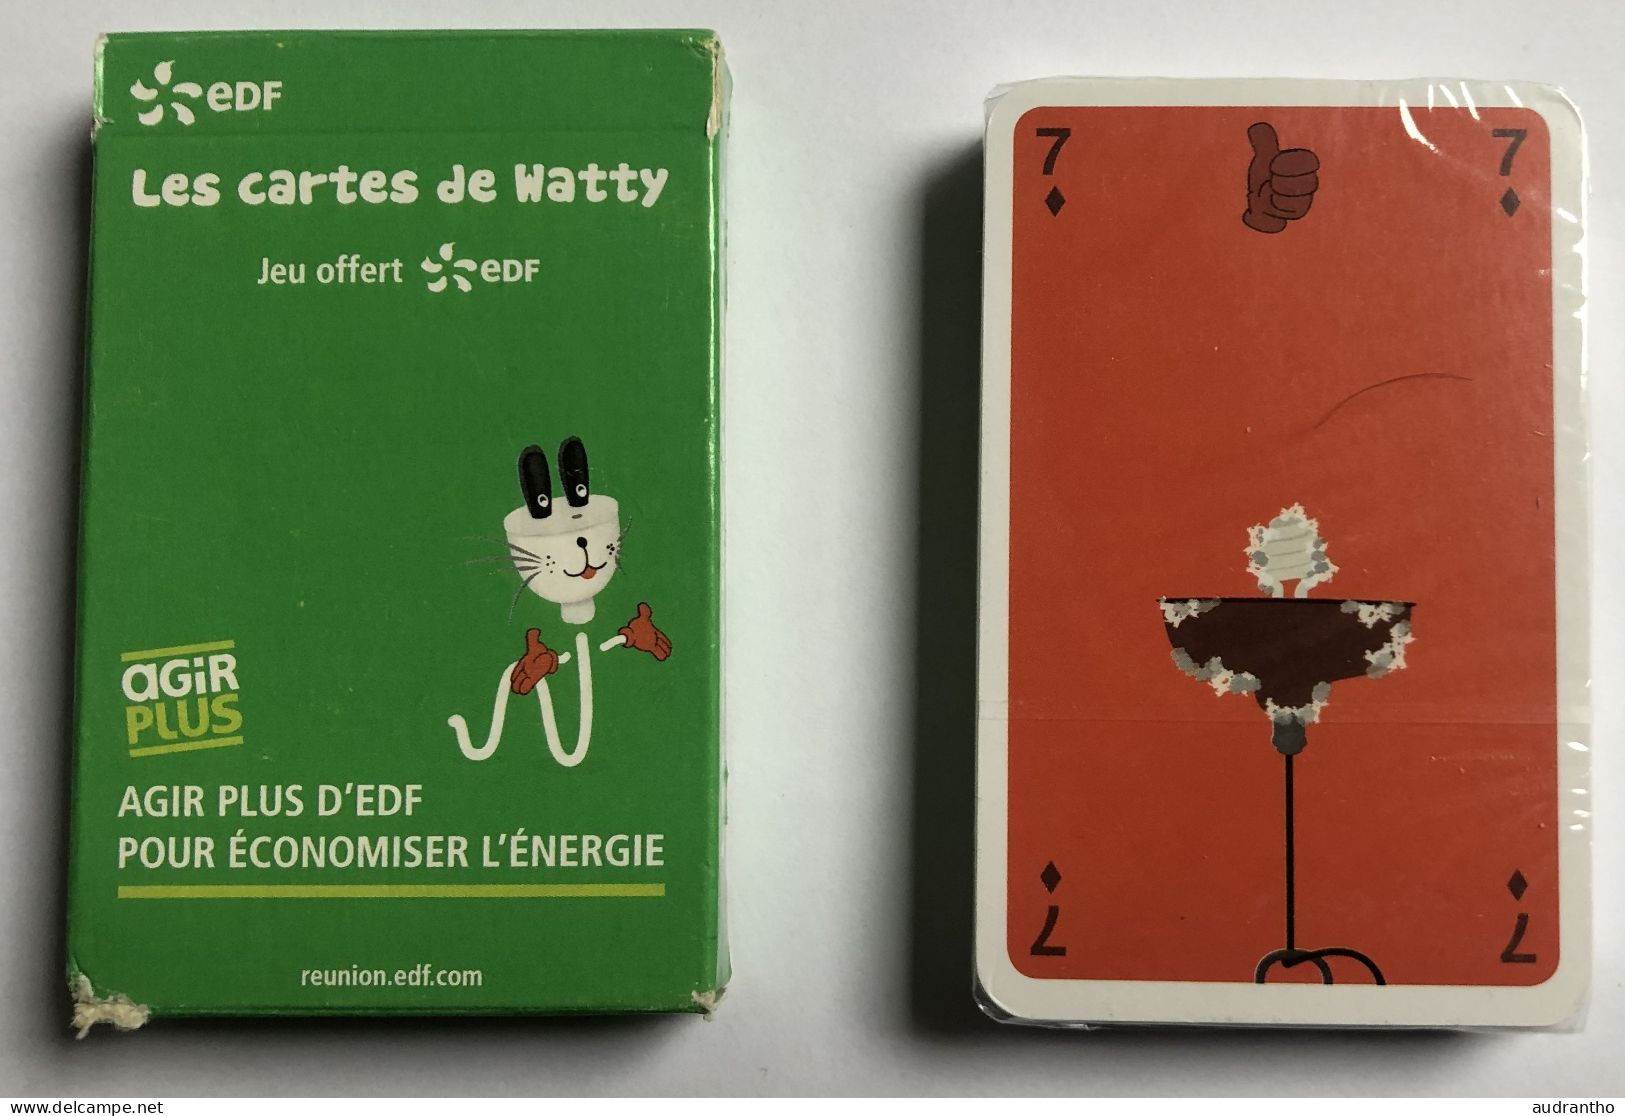 Jeu De 32 Cartes Publicitaire Rare EDF 2016 Les Cartes De Watty - Mistigri Et Memory-duo - Les éco-gestes - 32 Carte